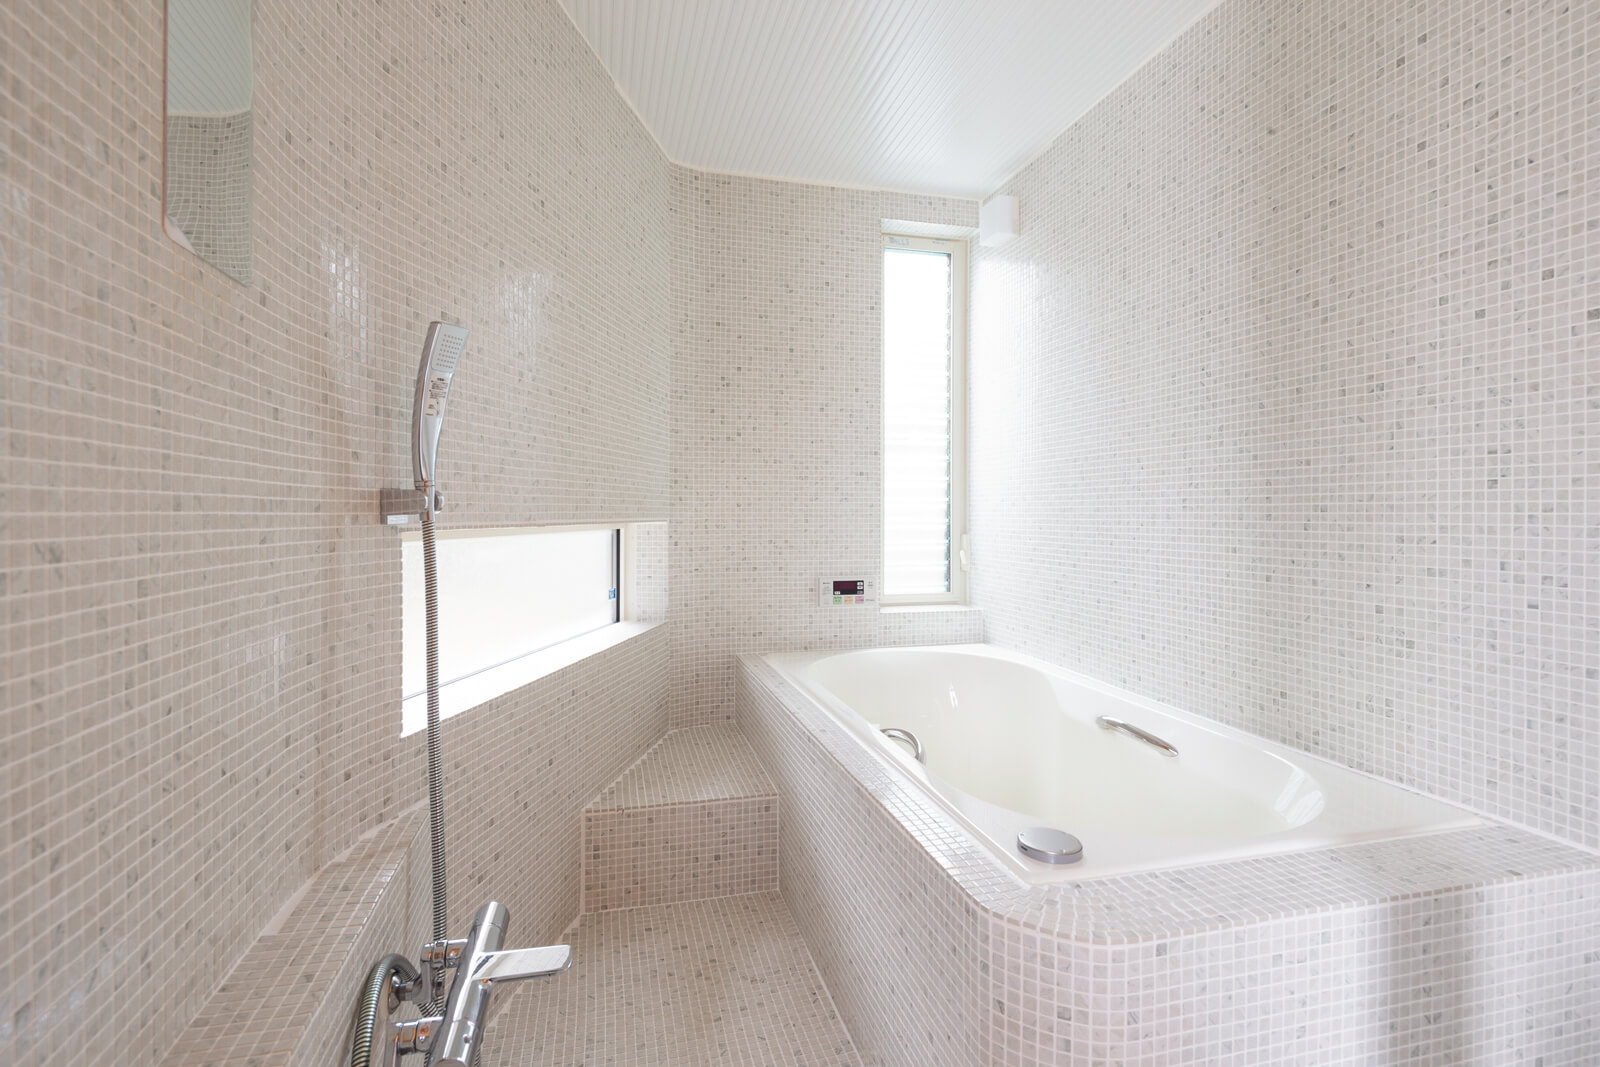 リゾートライクな雰囲気の明るい浴室は、全面モザイクタイル張り